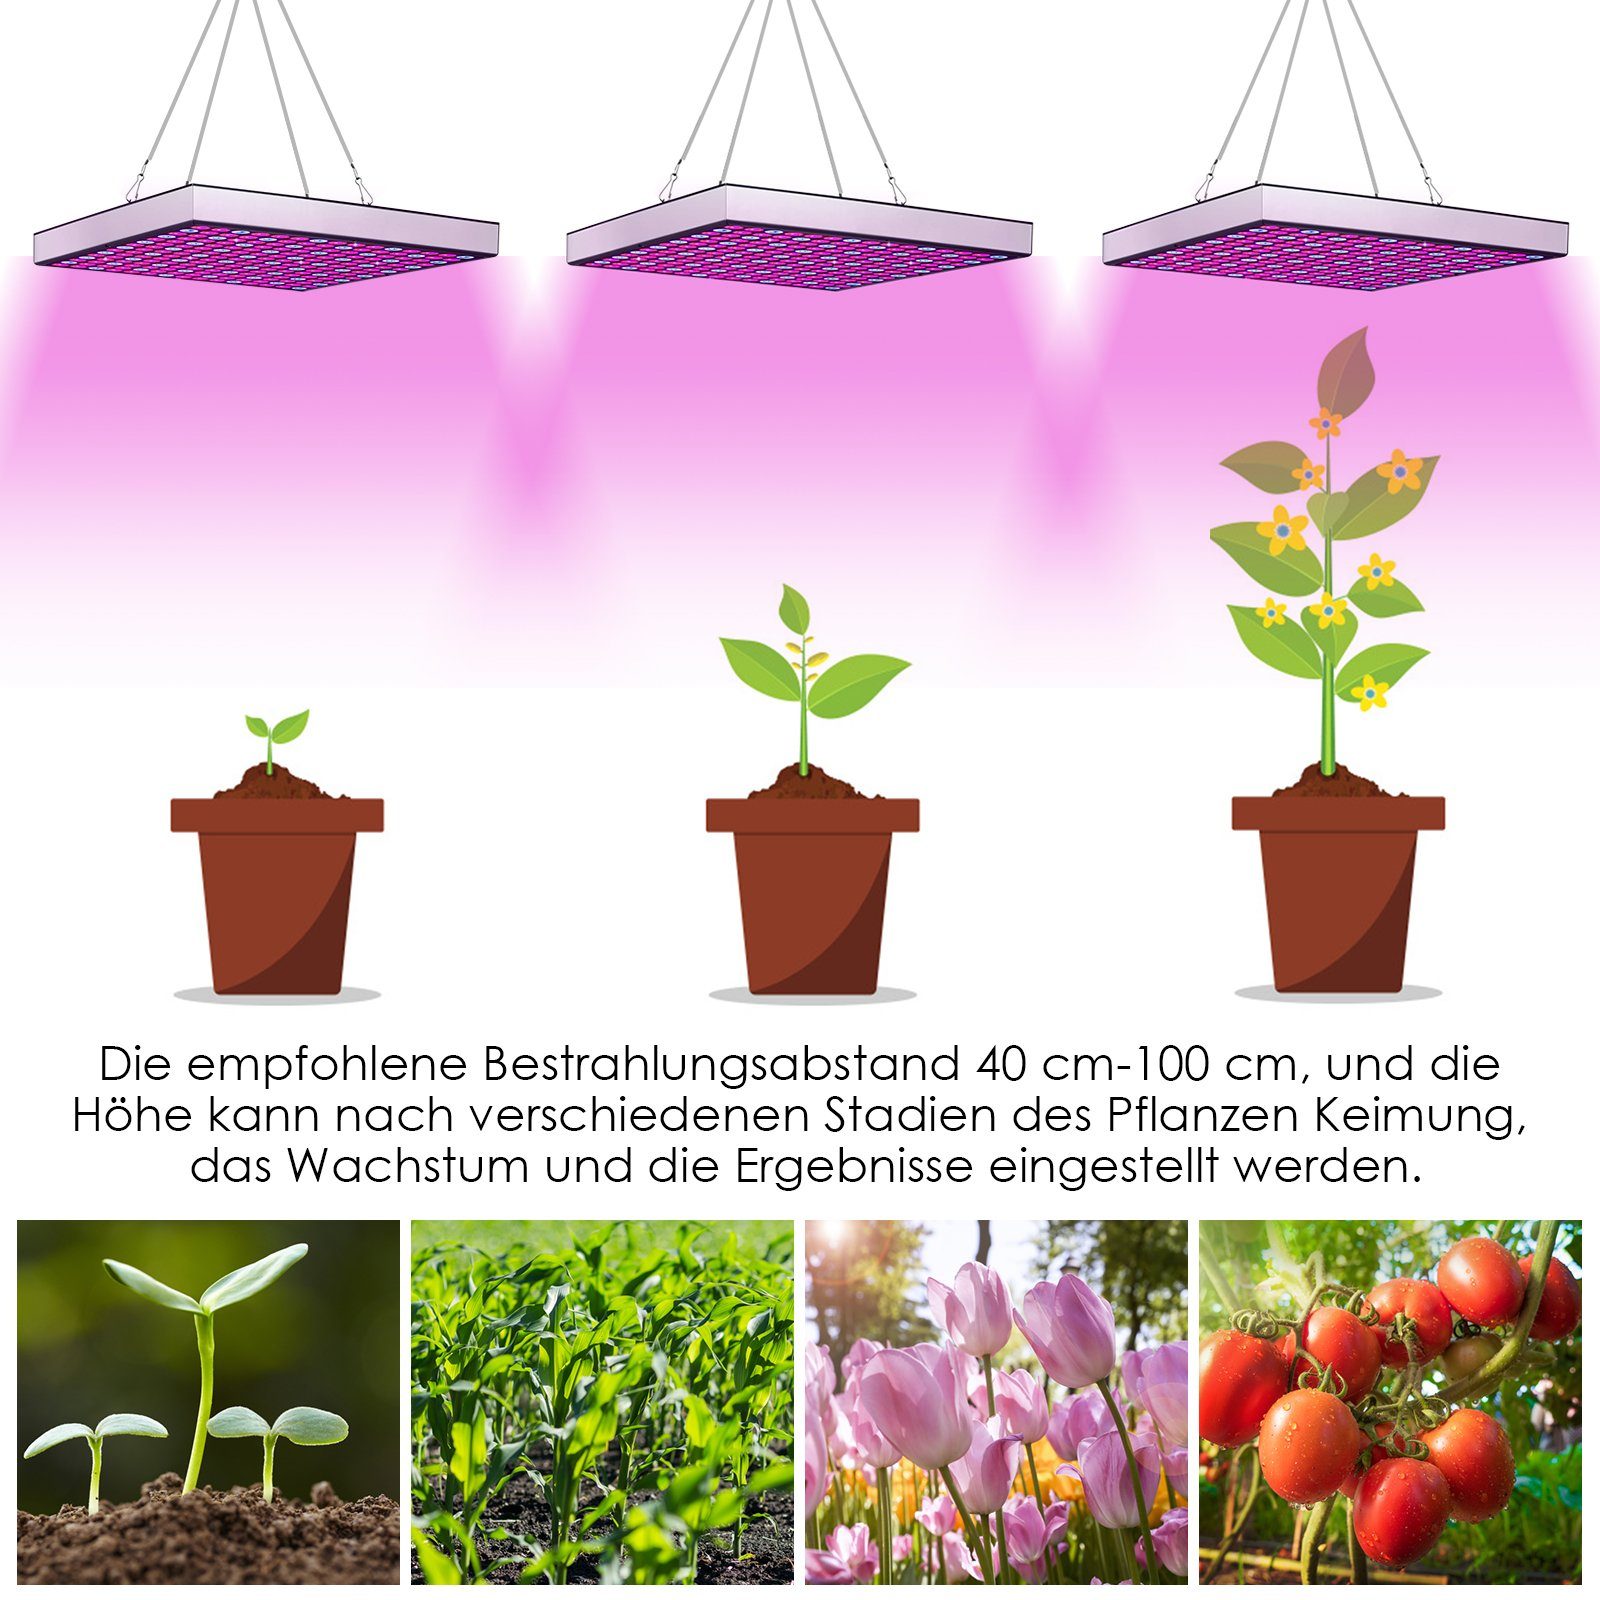 Zimmerpflanzen Blumen LED für Wachstumslicht Lospitch Vollspektrum, 15W Sukkulenten Pflanzenlampe Gewächshaus